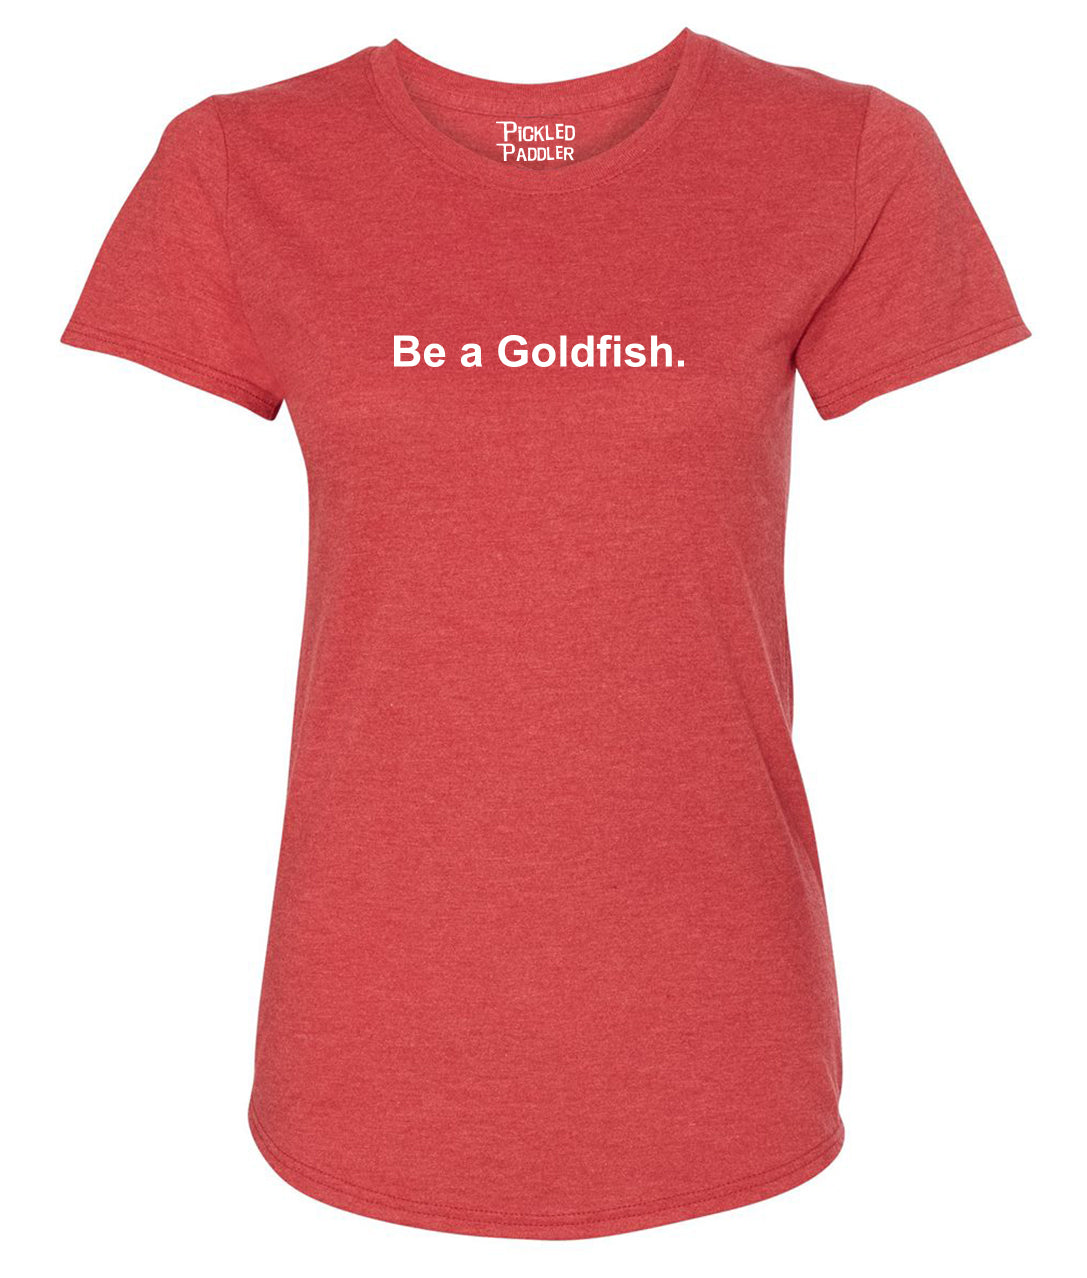 Be a Goldfish Pickleball T-shirt – Women's – Pickled Paddler